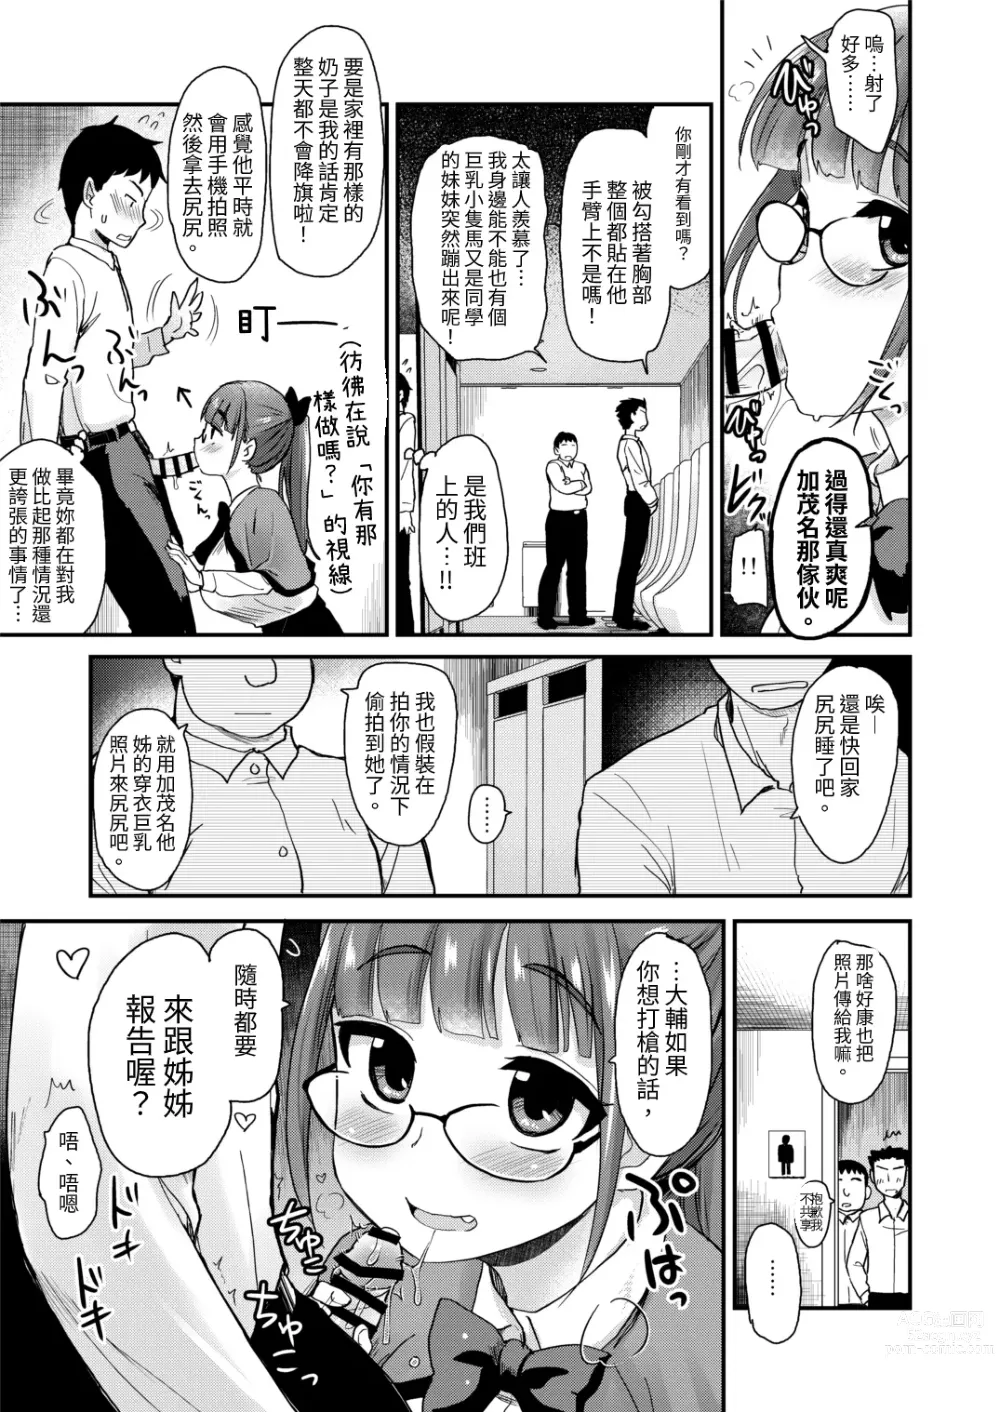 Page 9 of doujinshi 沒有血緣的姊姊認為弟弟的性慾處理是姊姊的責任。